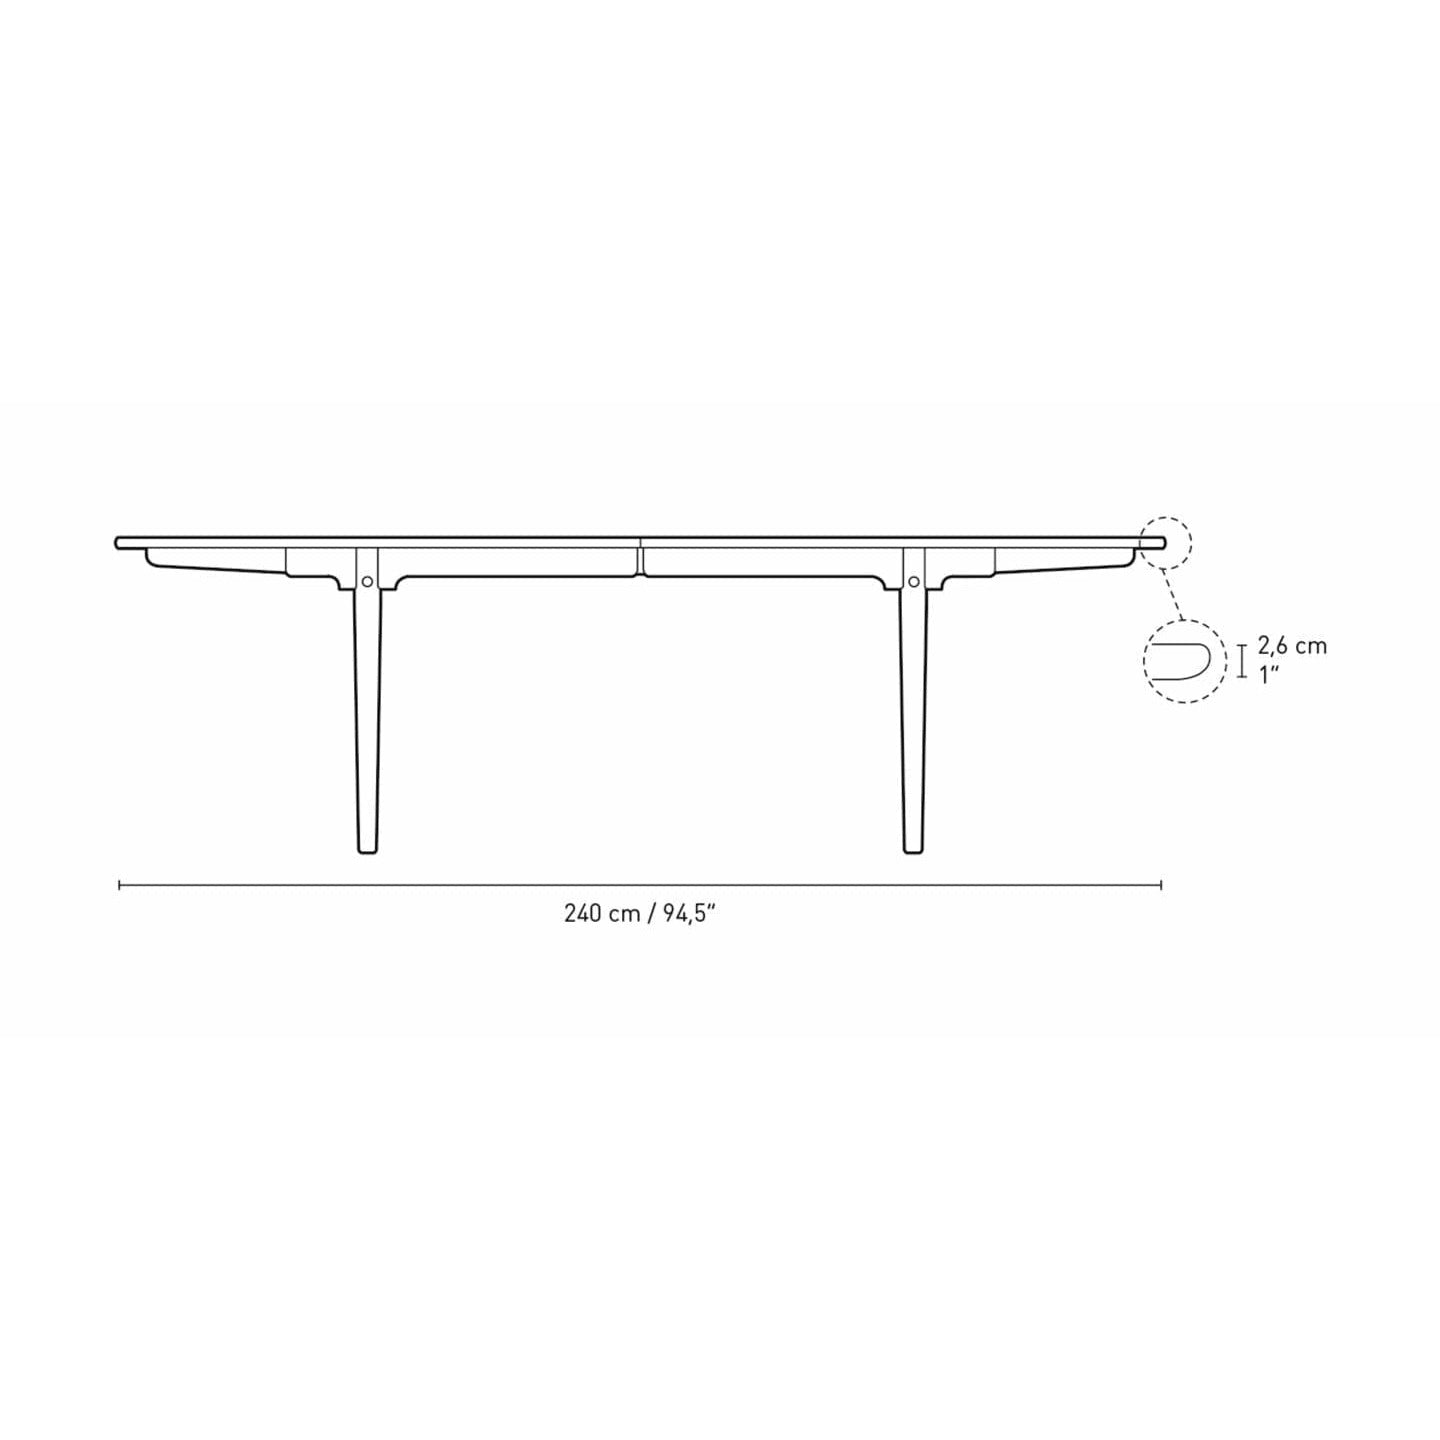 Carl Hansen CH339 matbord med dragning för 2 plattor, ekrökt olja